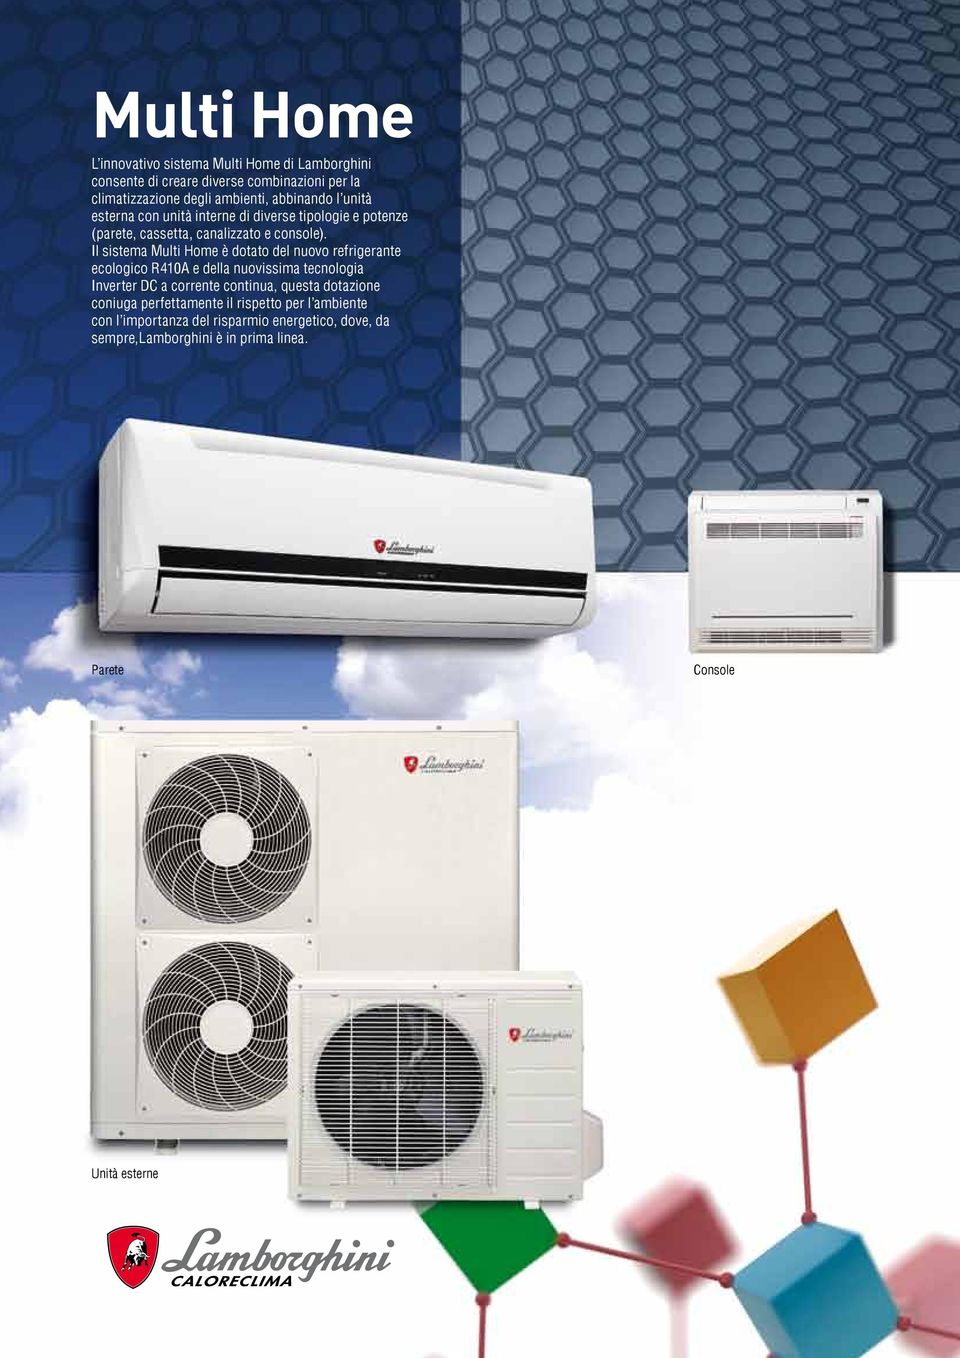 Il sistema Multi Home è dotato del nuovo refrigerante ecologico R410A e della nuovissima tecnologia Inverter DC a corrente continua, questa